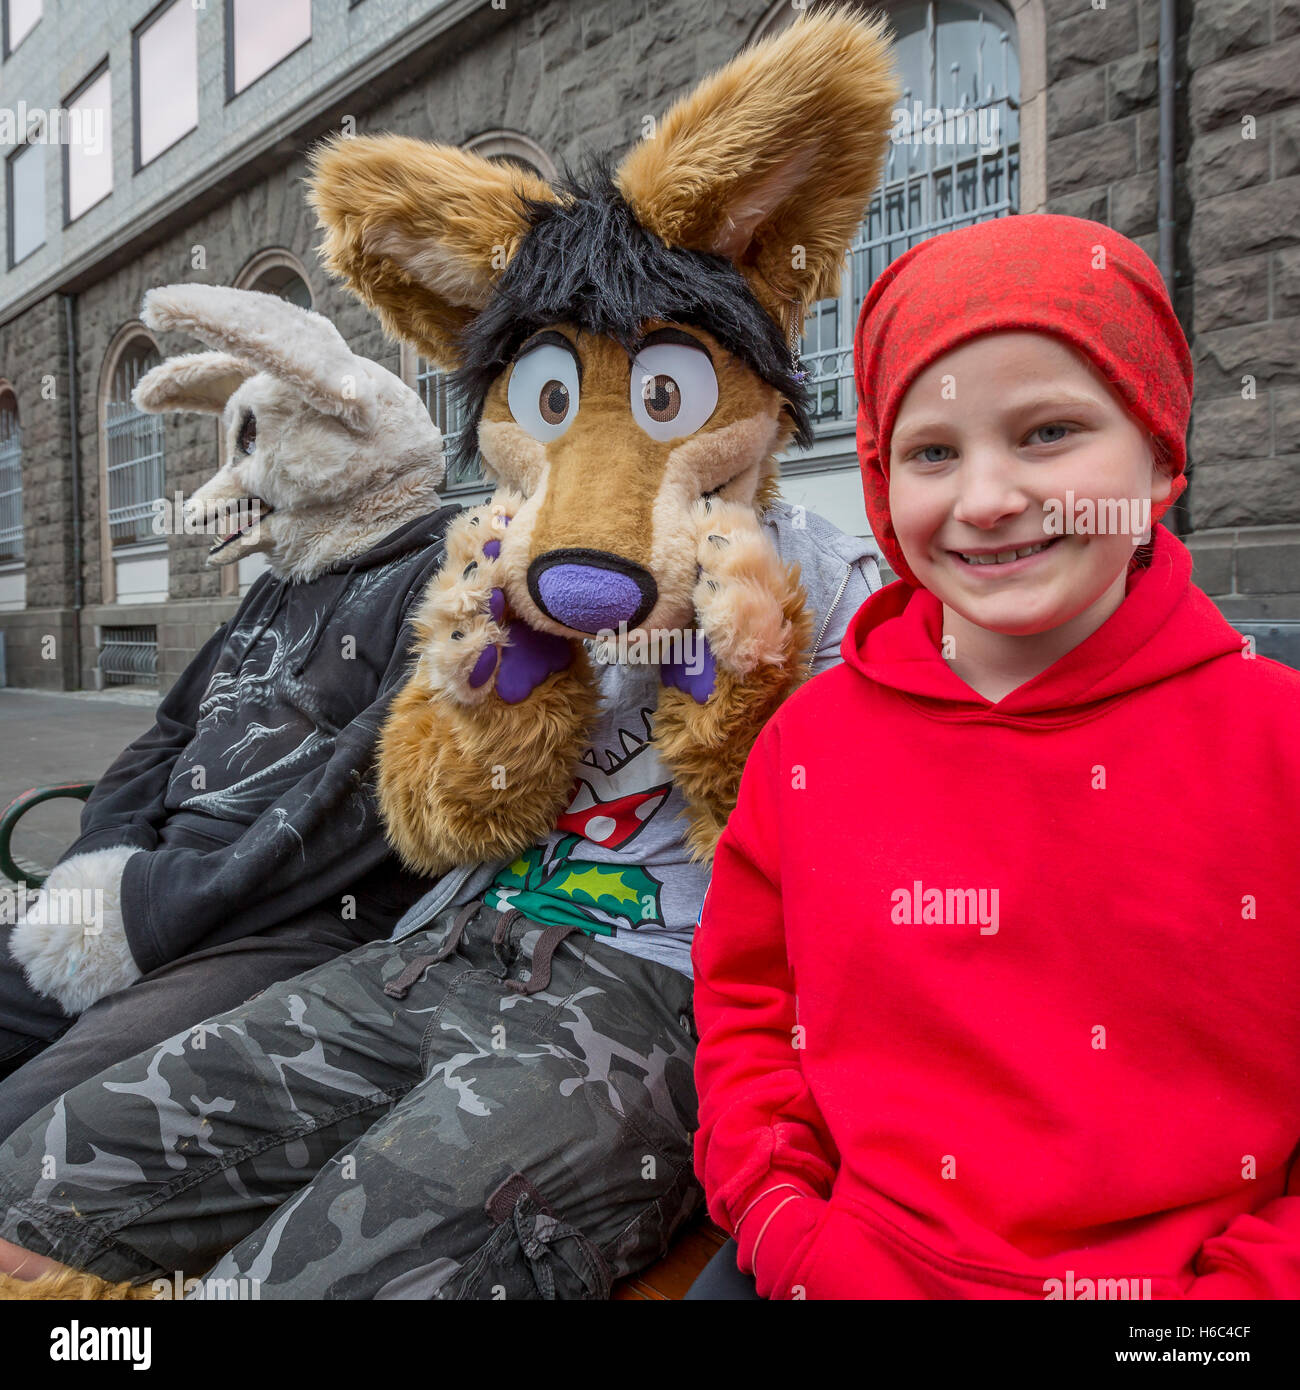 La gente joven con trajes de animales, el día de la independencia, Reykjavik, Iceland Foto de stock